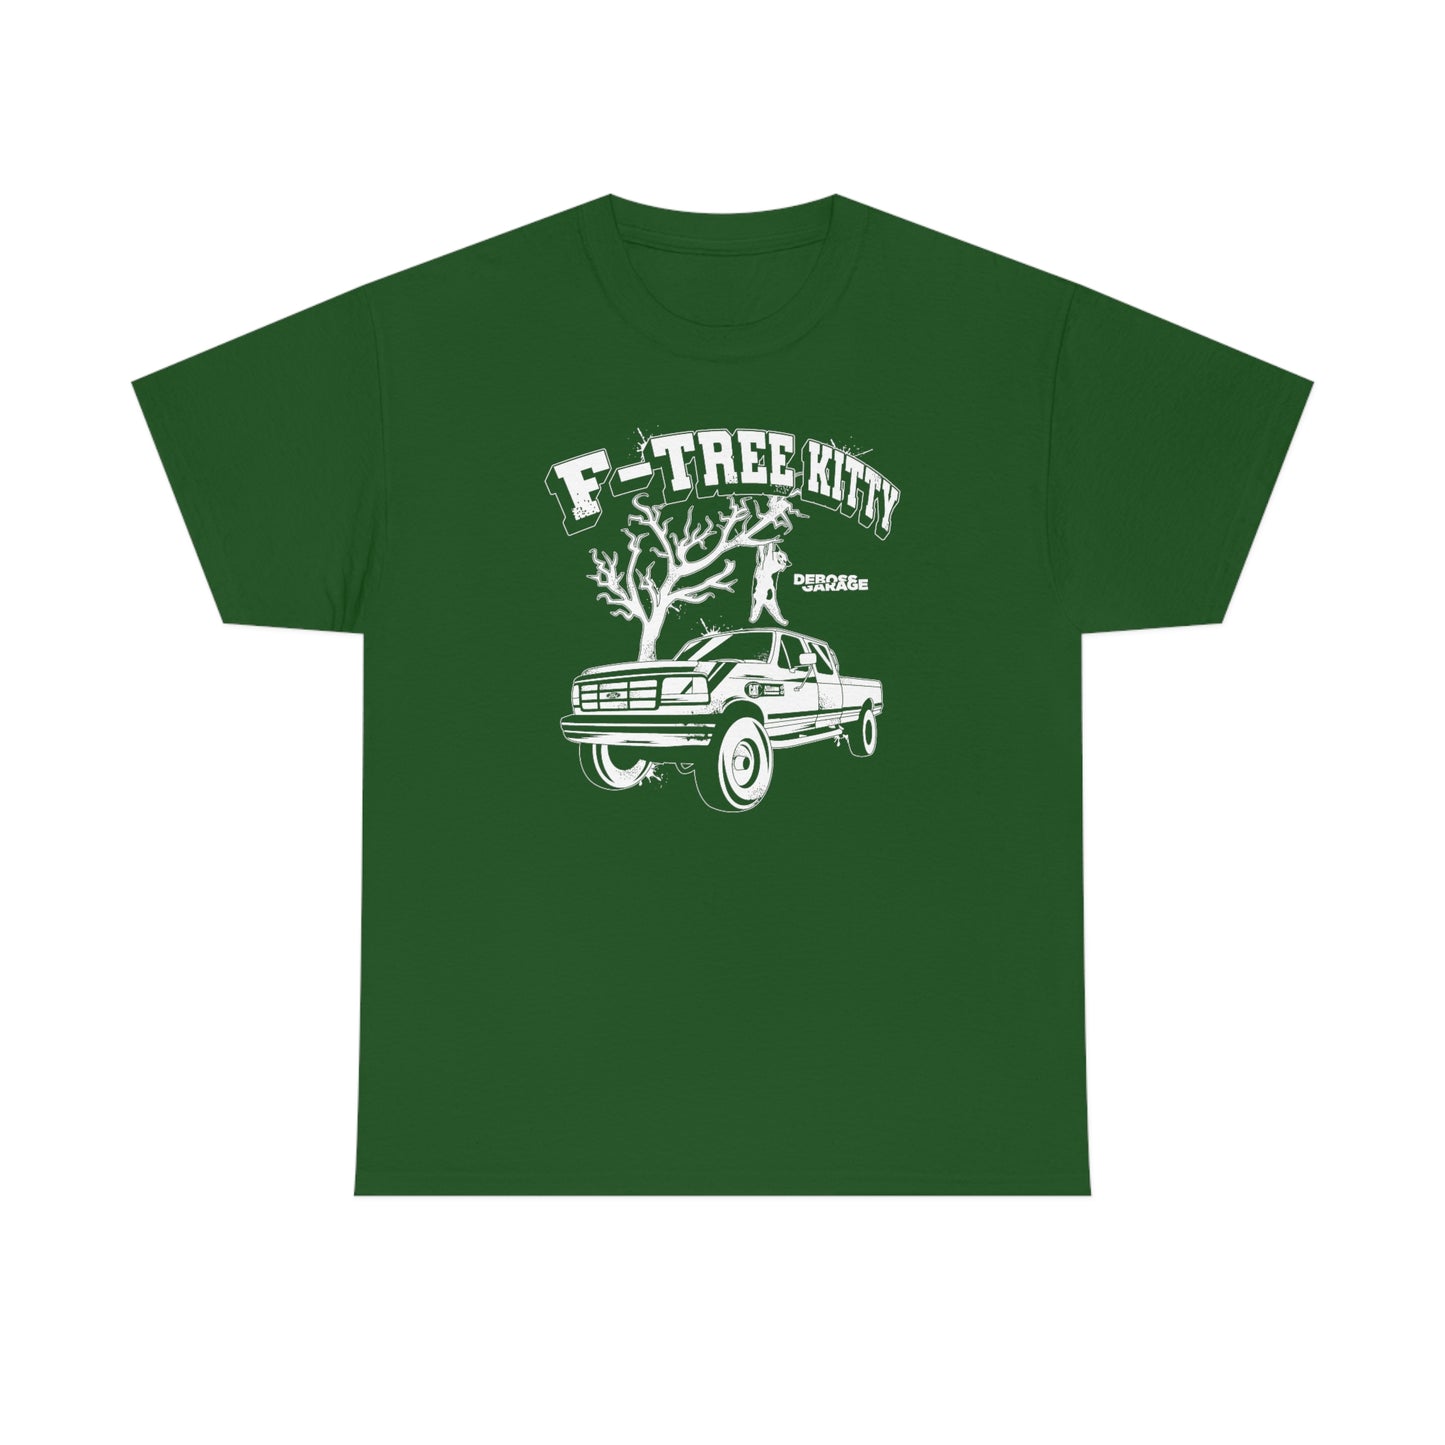 F-Tree Kitty T-Shirt (3XL+)